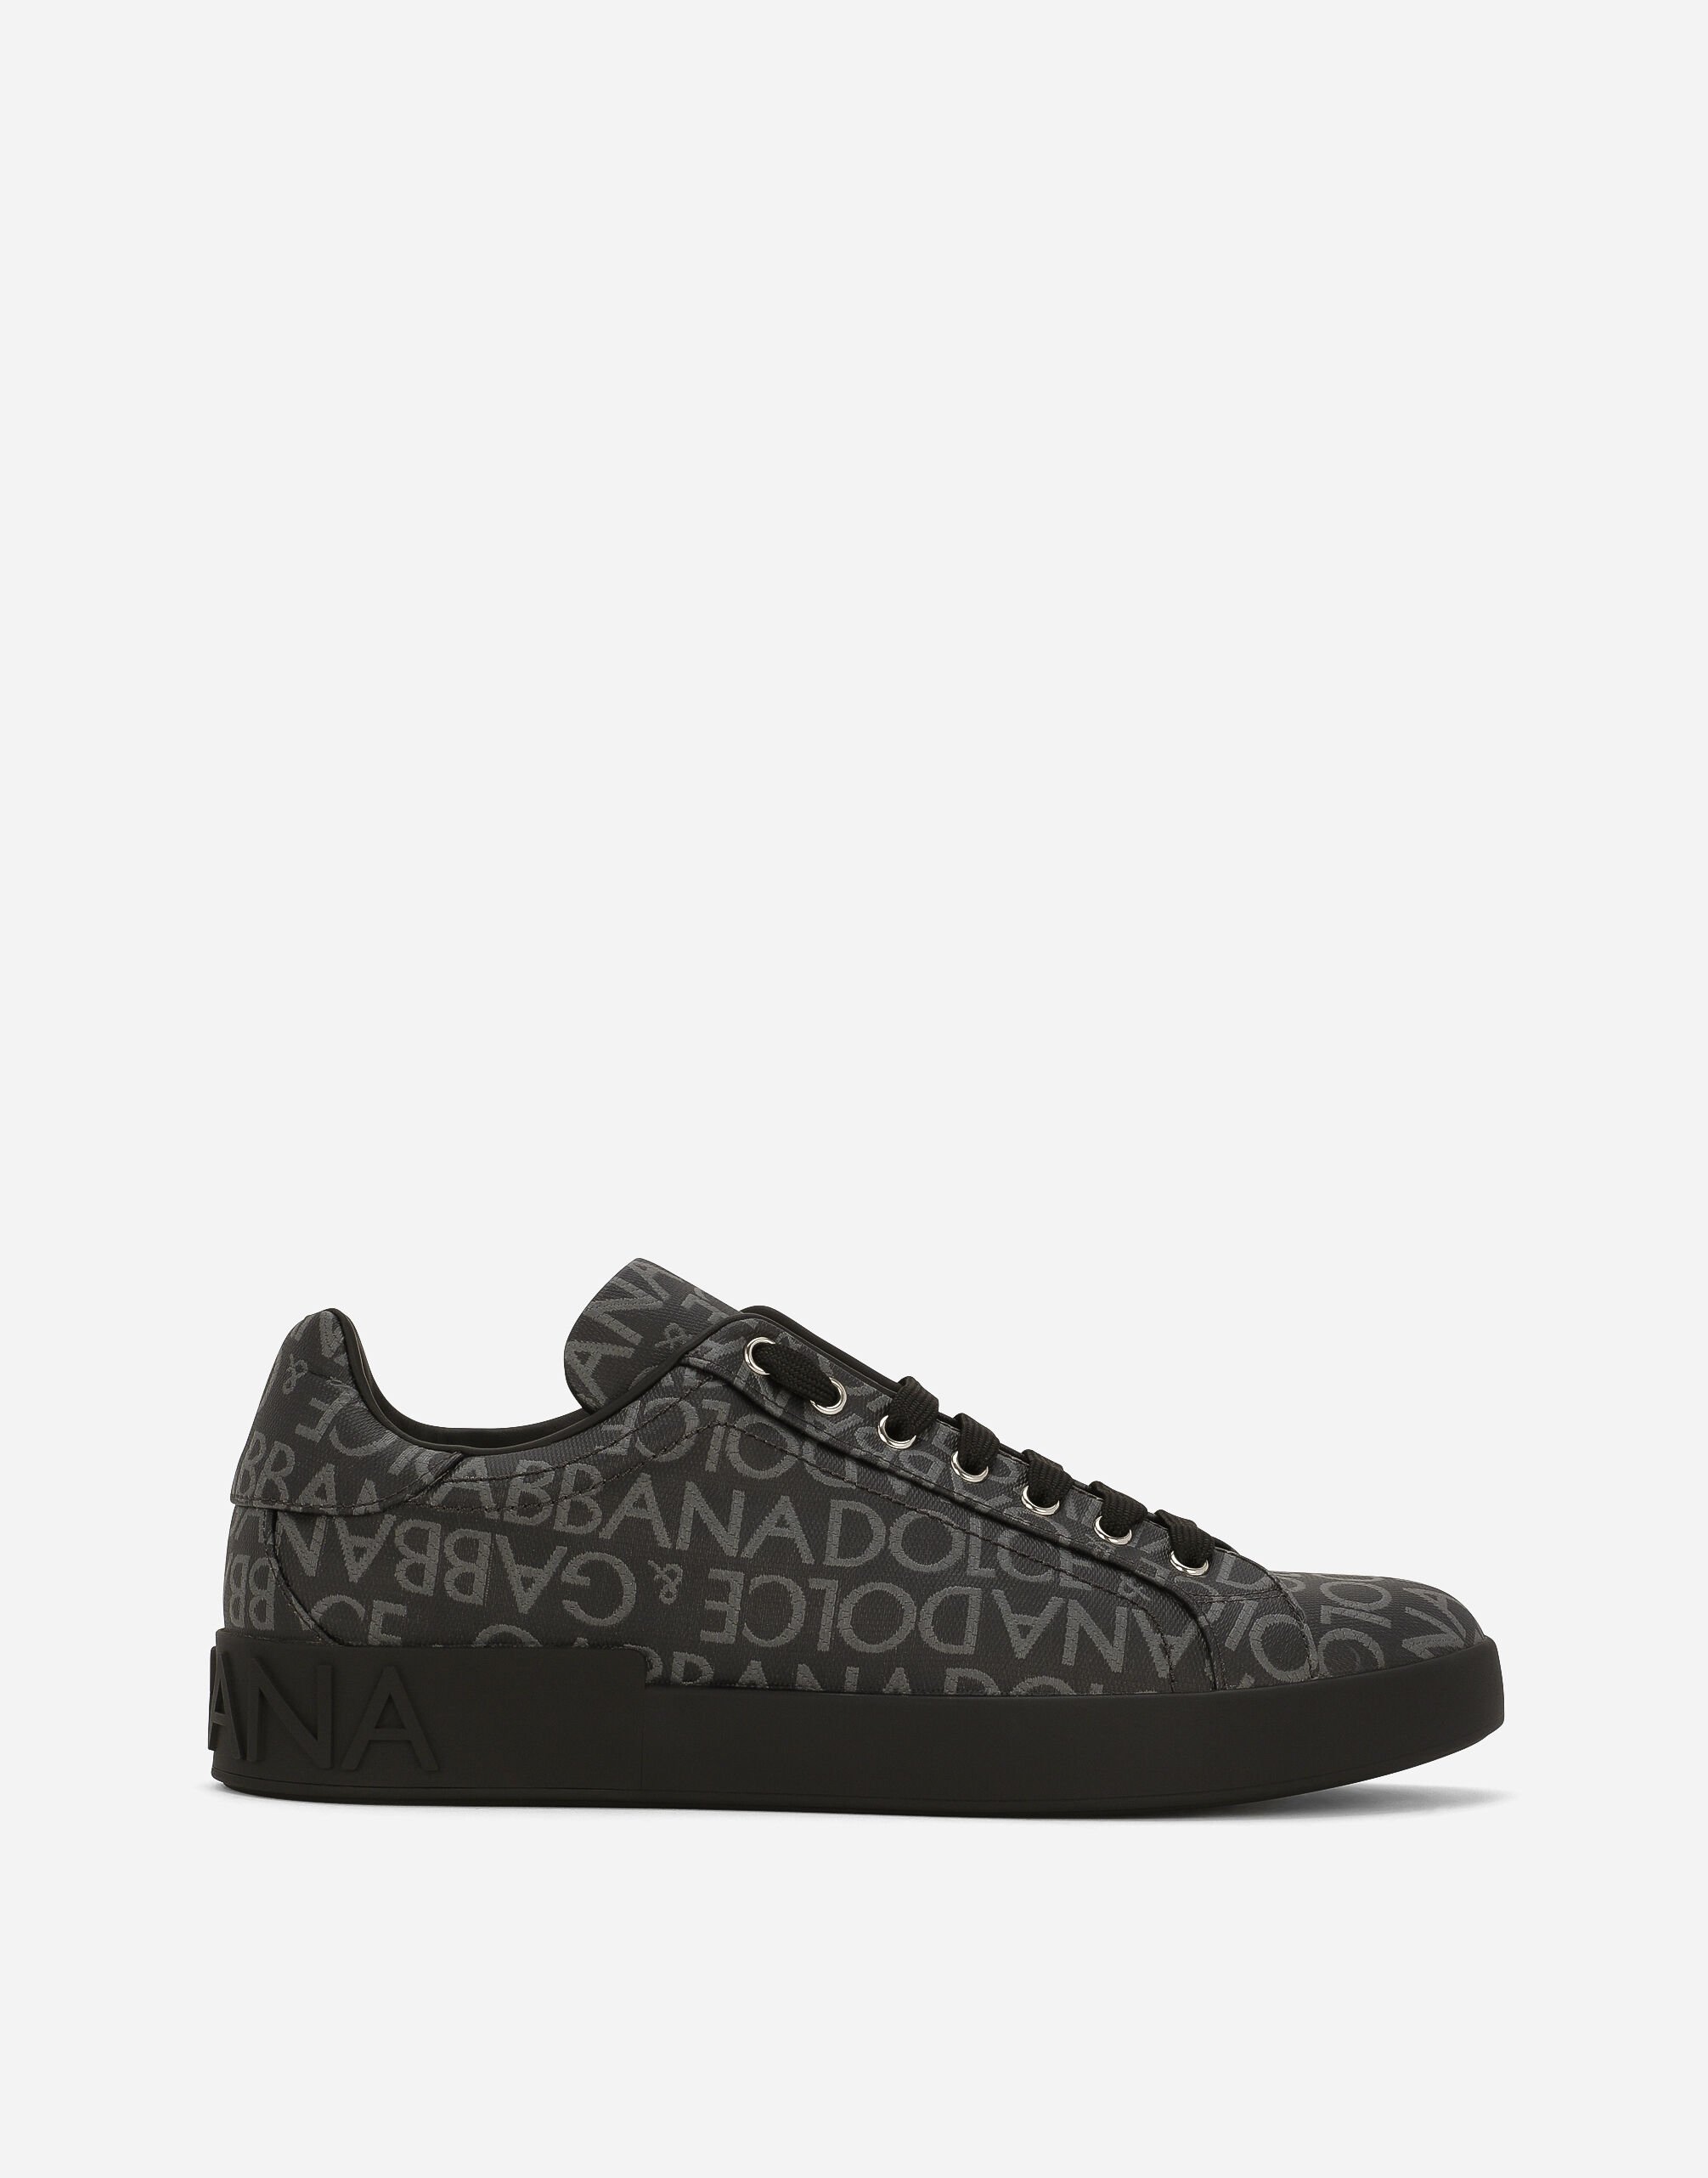 Dolce&Gabbana Sneakers Portofino en jacquard enduit Noir G040VTHU7QV